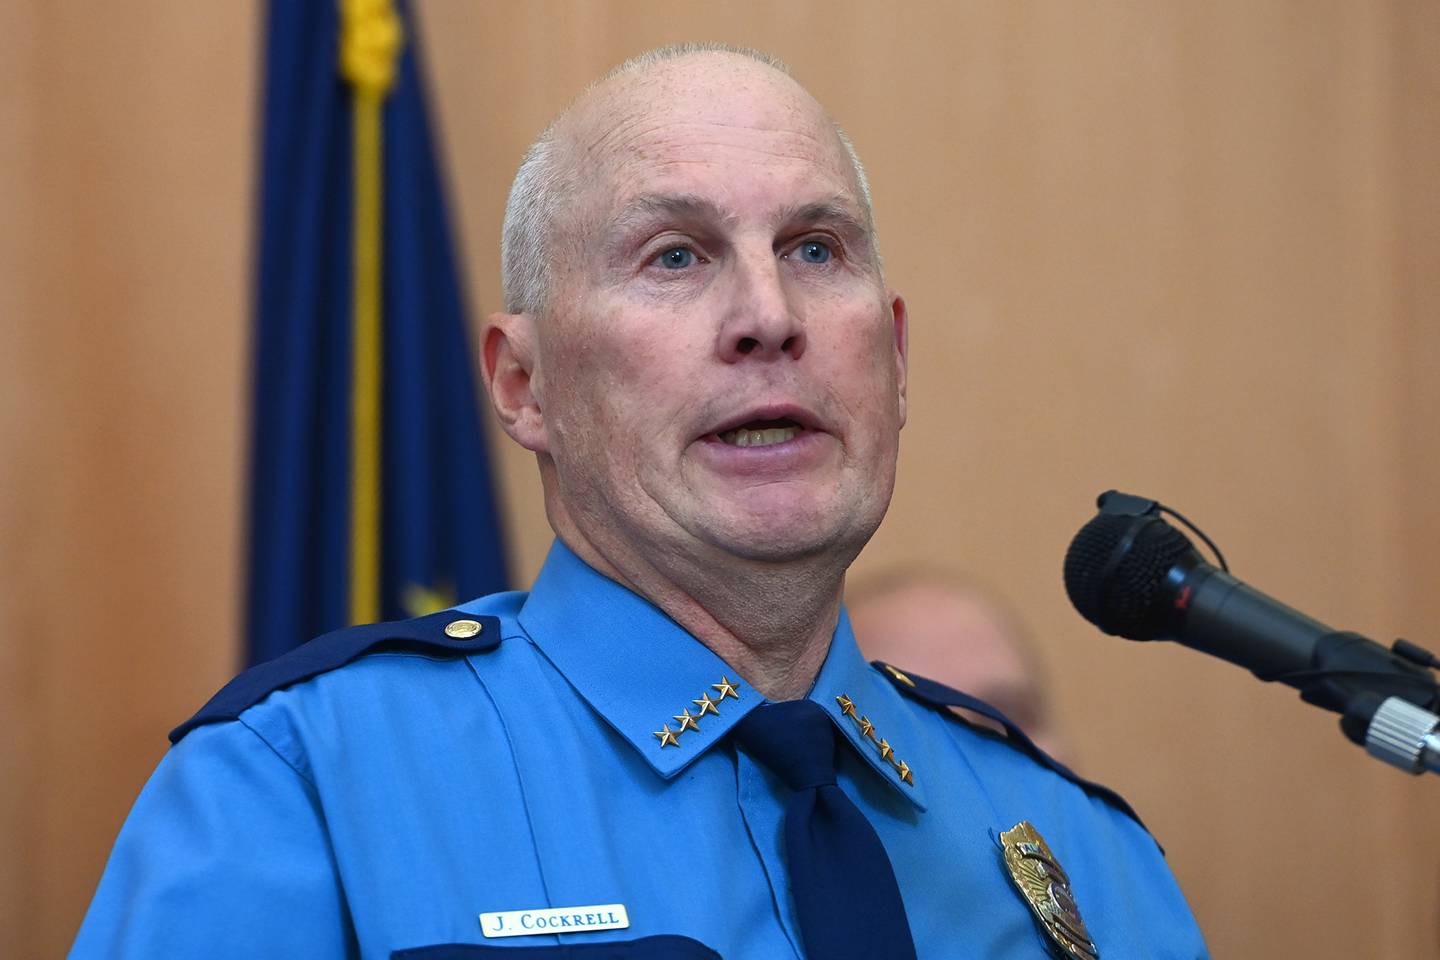 James Cockrell, Alaska Department of Public Safety Commissioner, Narcotics Seizure